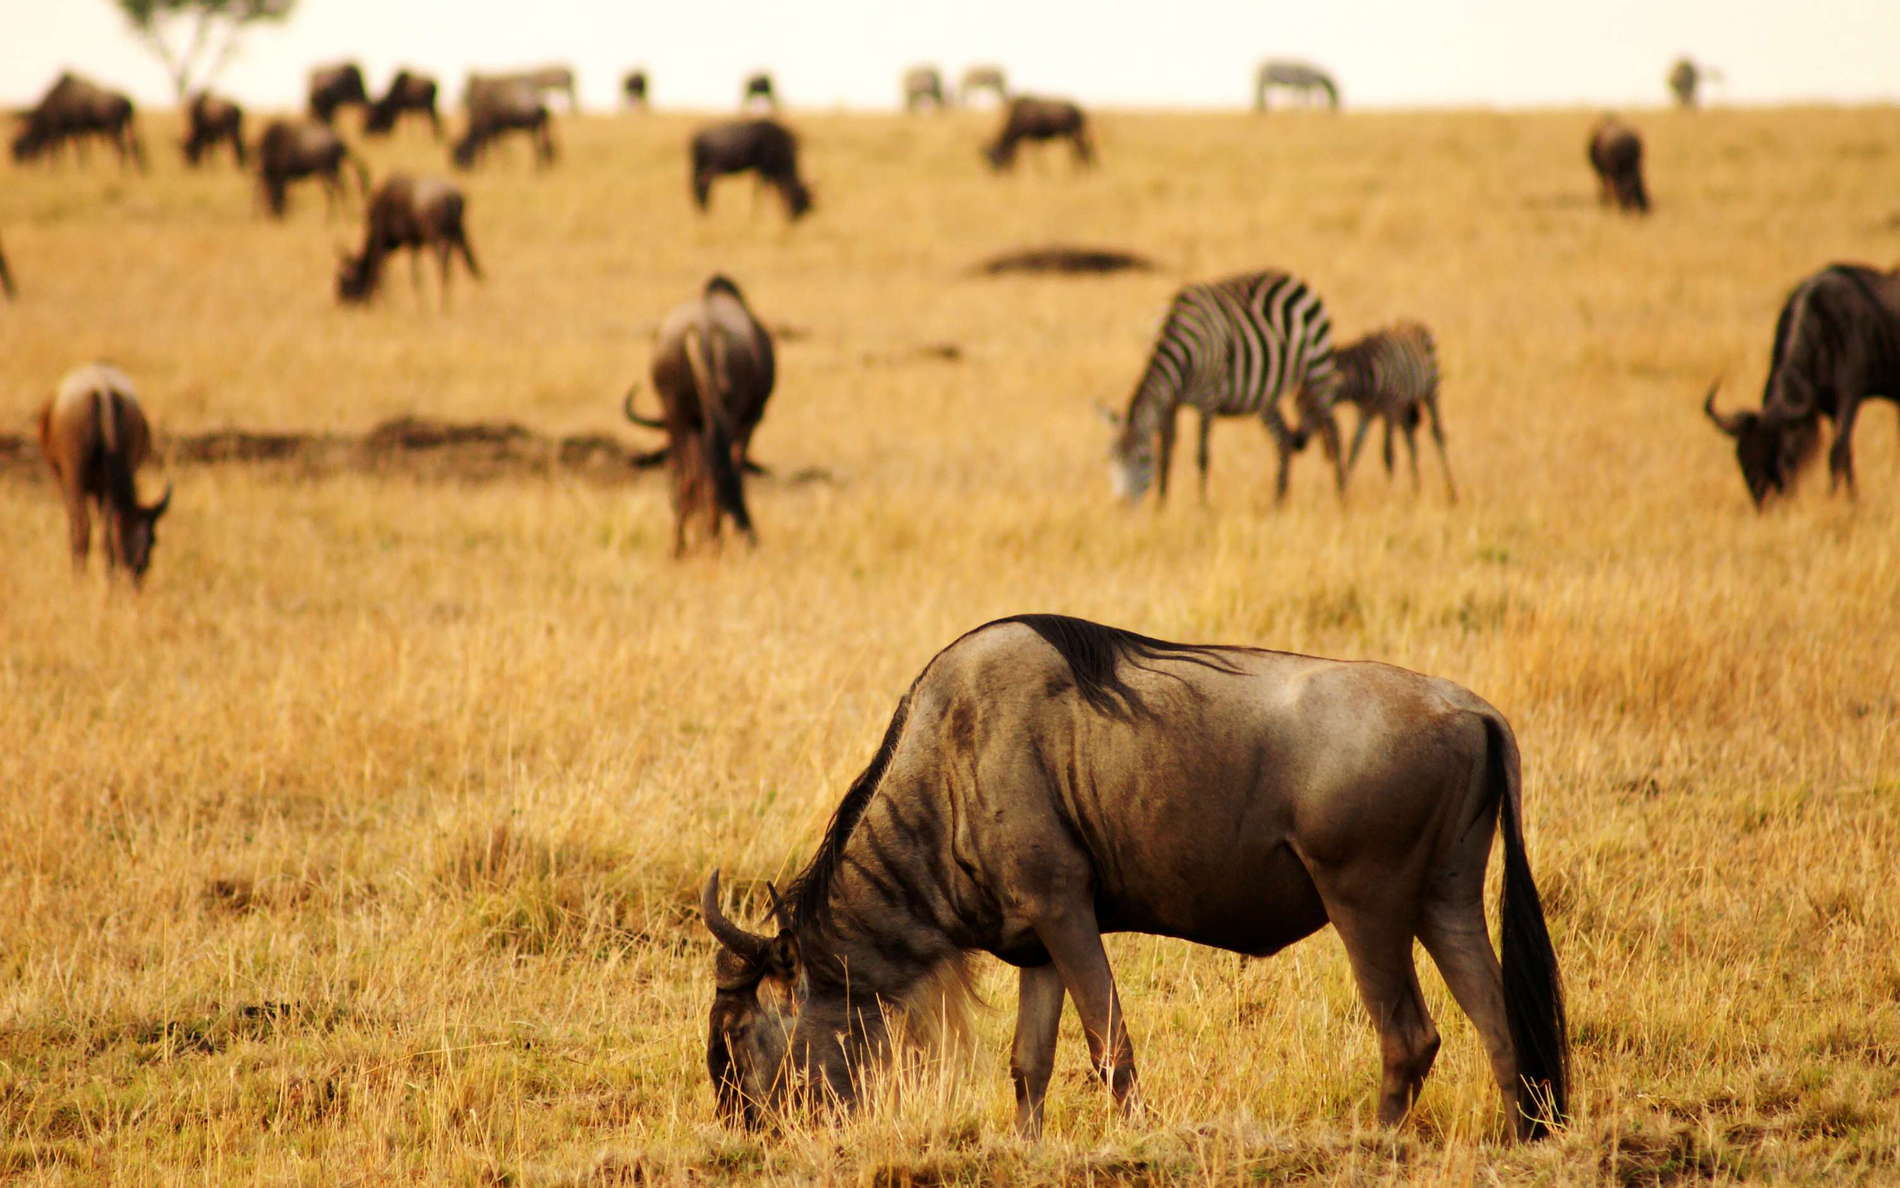 Masai Mara NR  |  Savanna with wildebeests